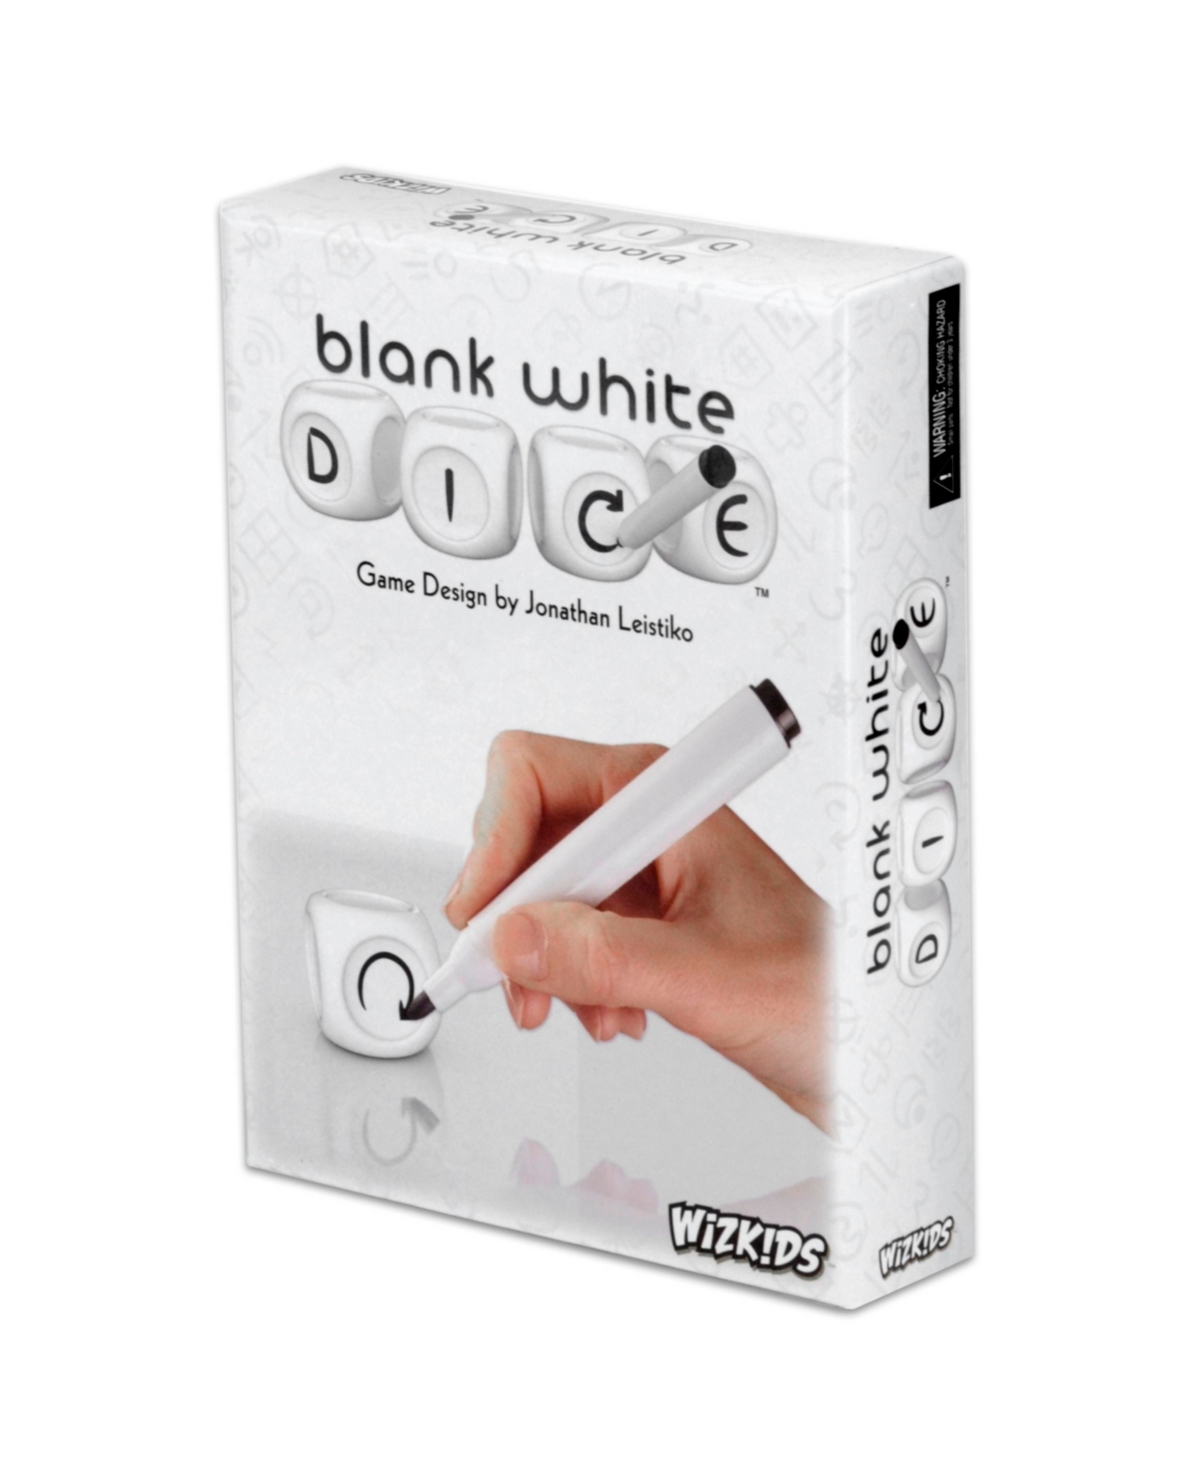 Wizkids Games Kids' Blank White Dice Game In Multi